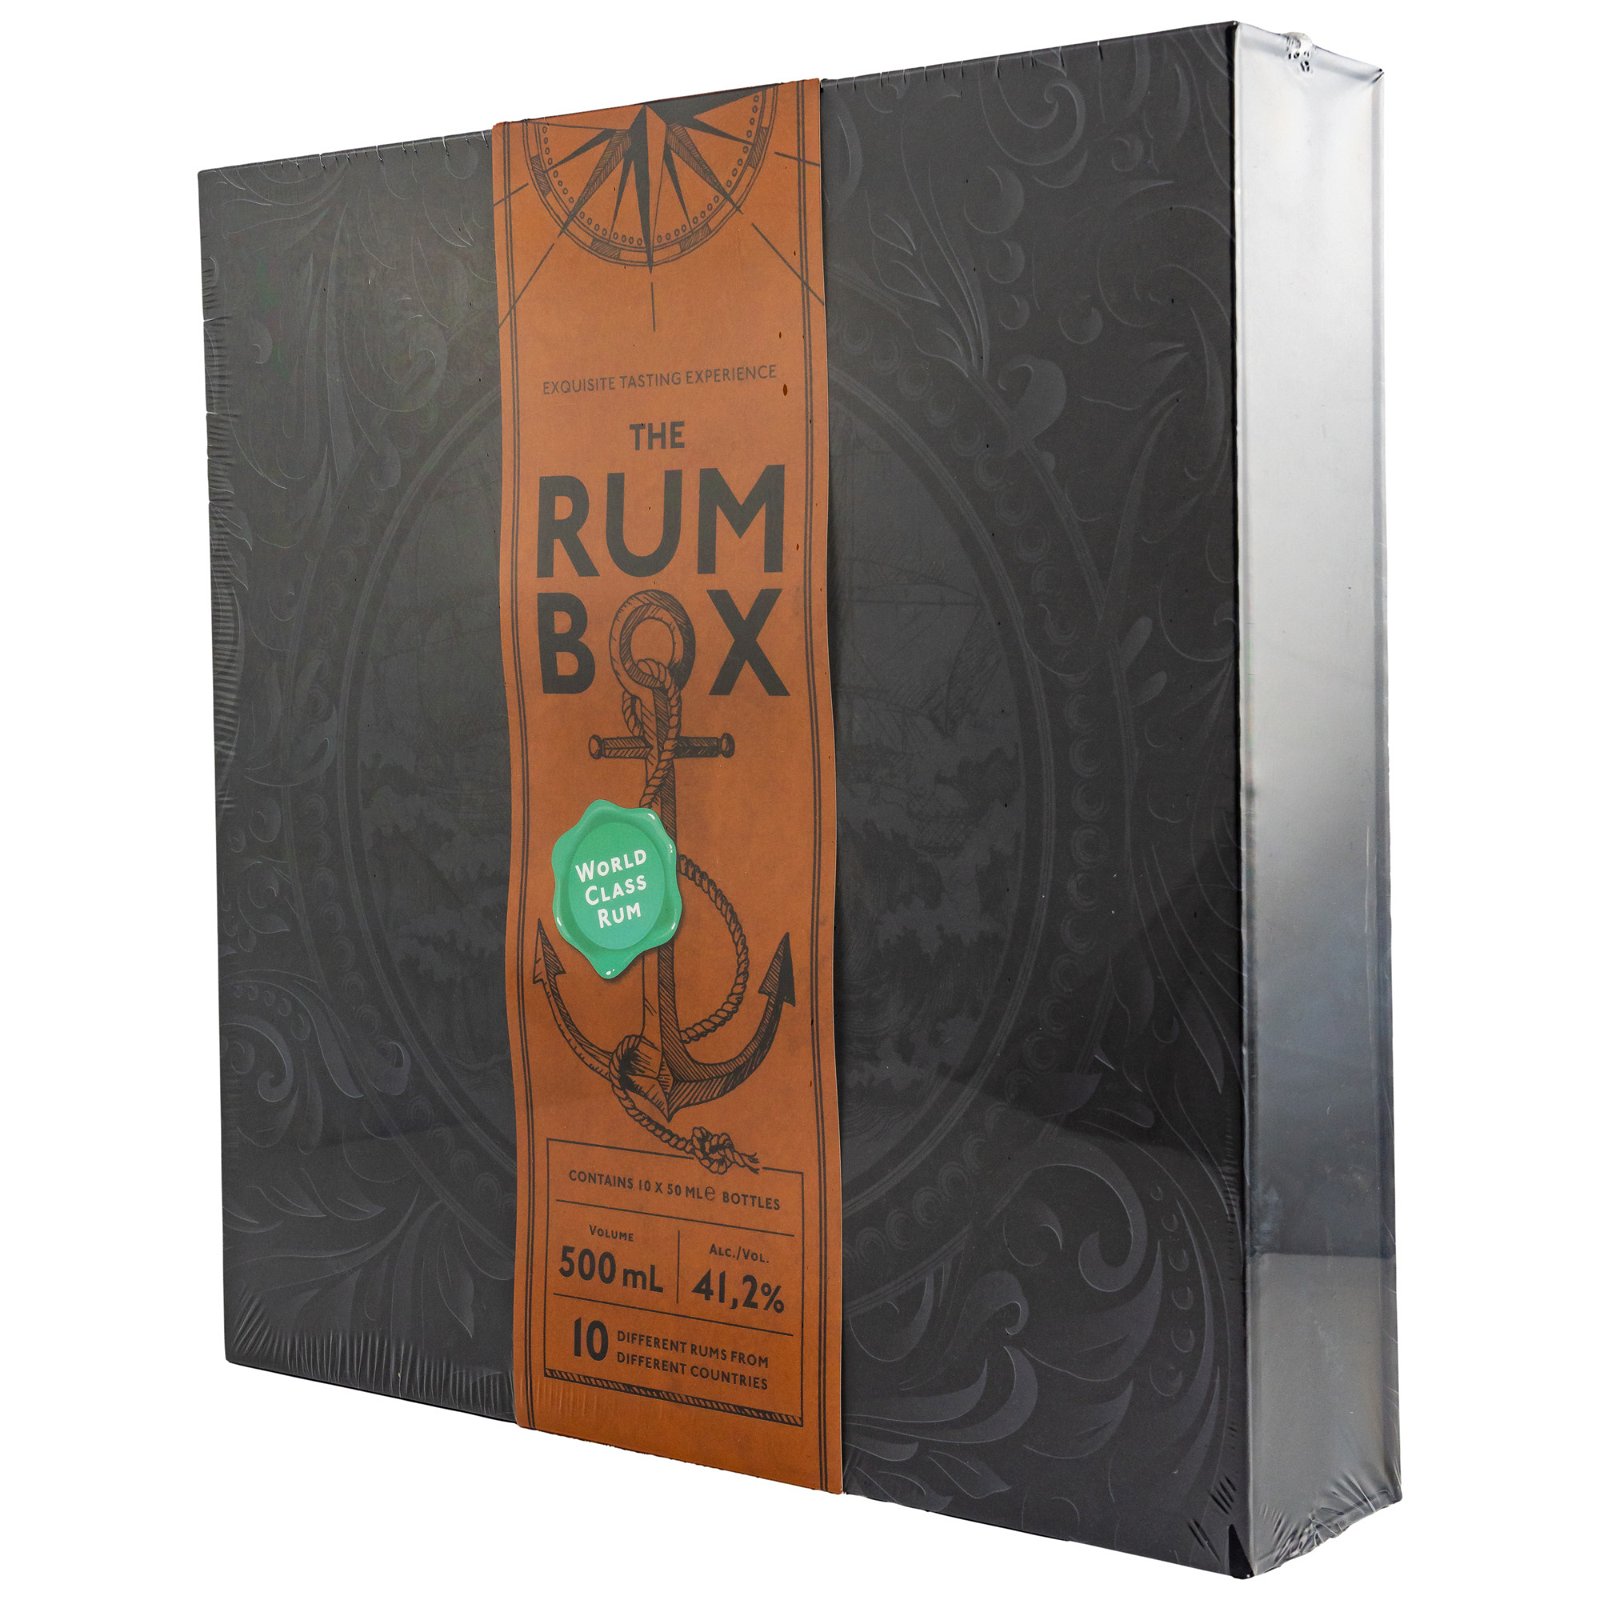 1423 The Rum Box World Class Rum Tasting (10x50ml)